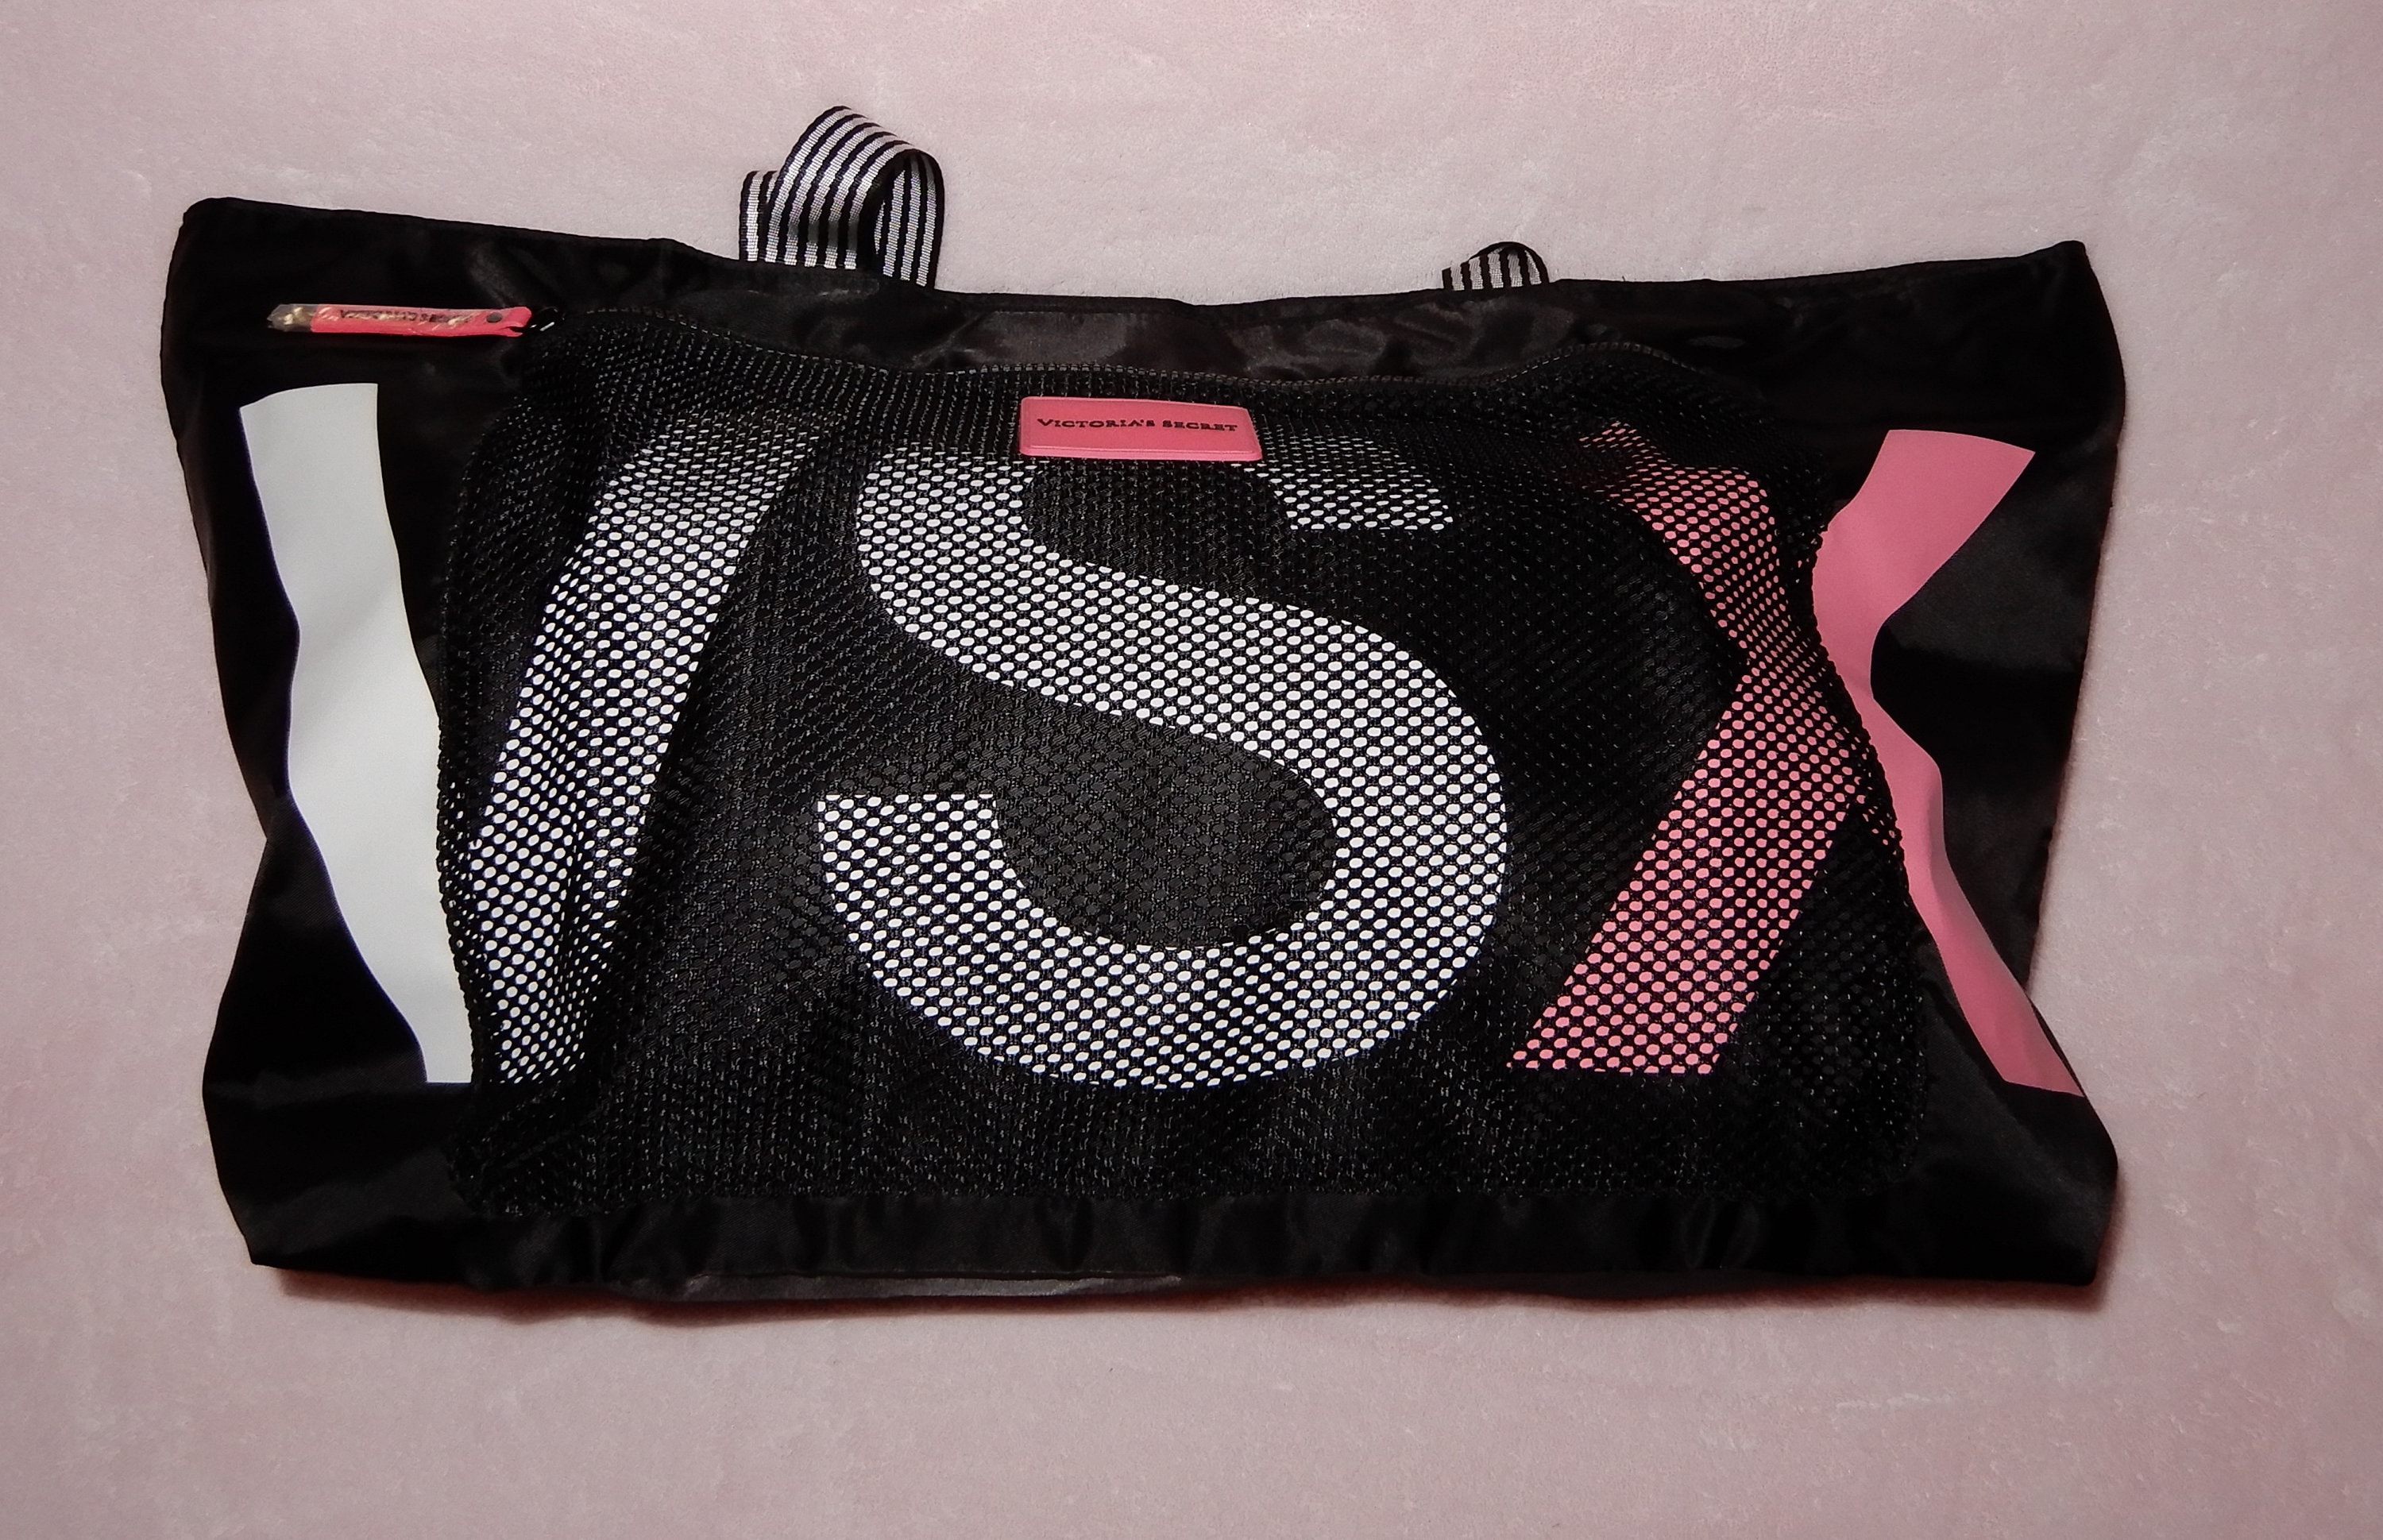 Victoria Secret Black & Pink Small Bag Purse Handbag